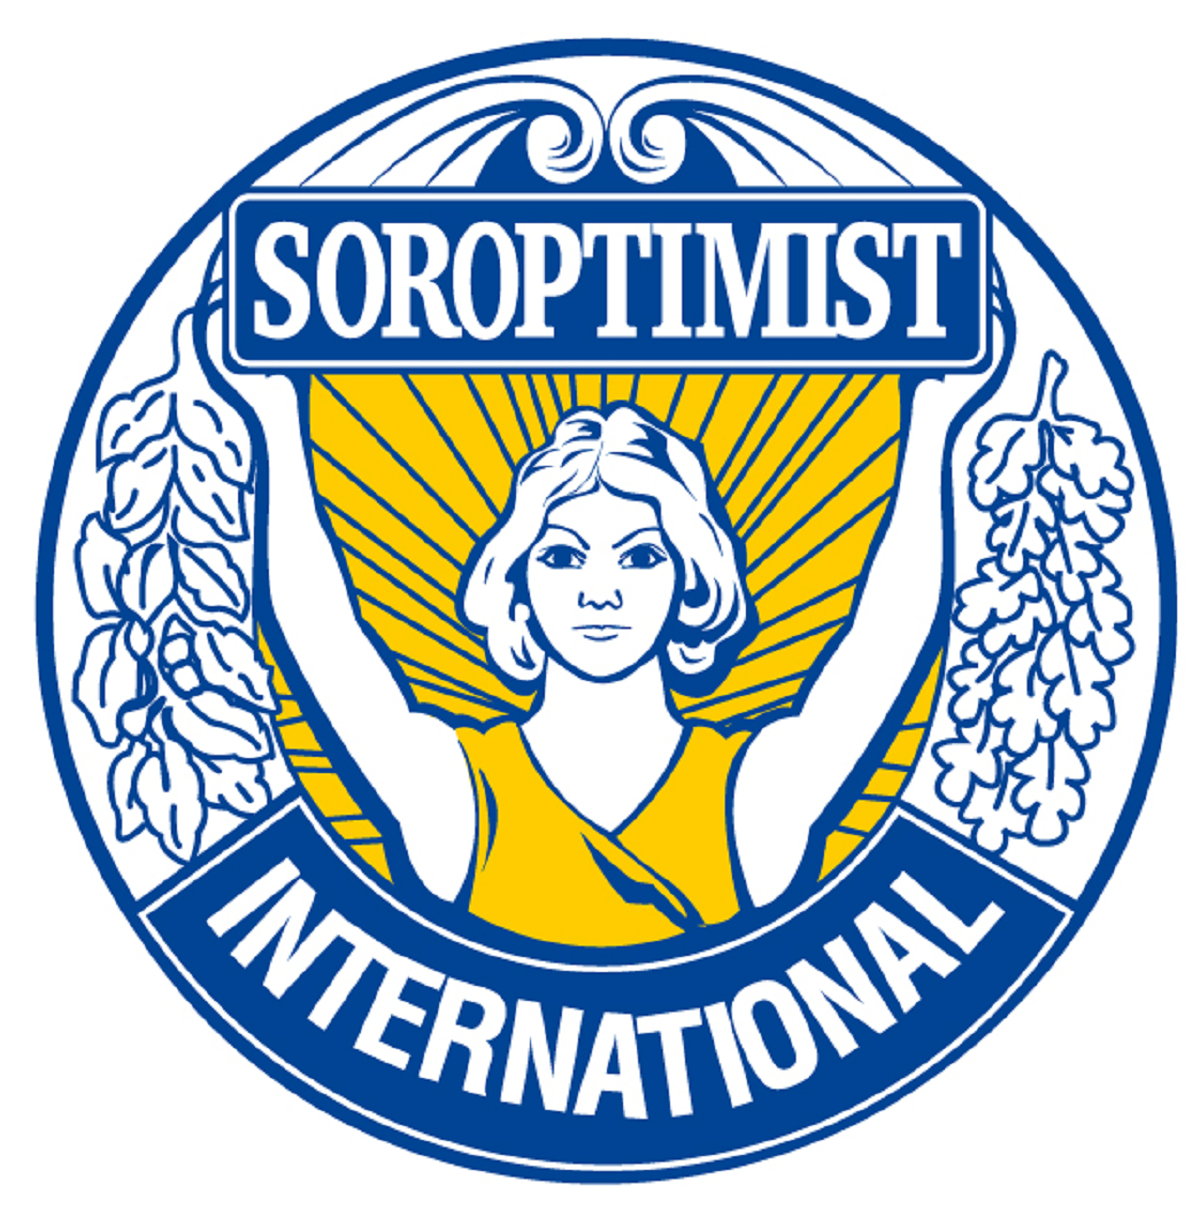 Soroptimist international club